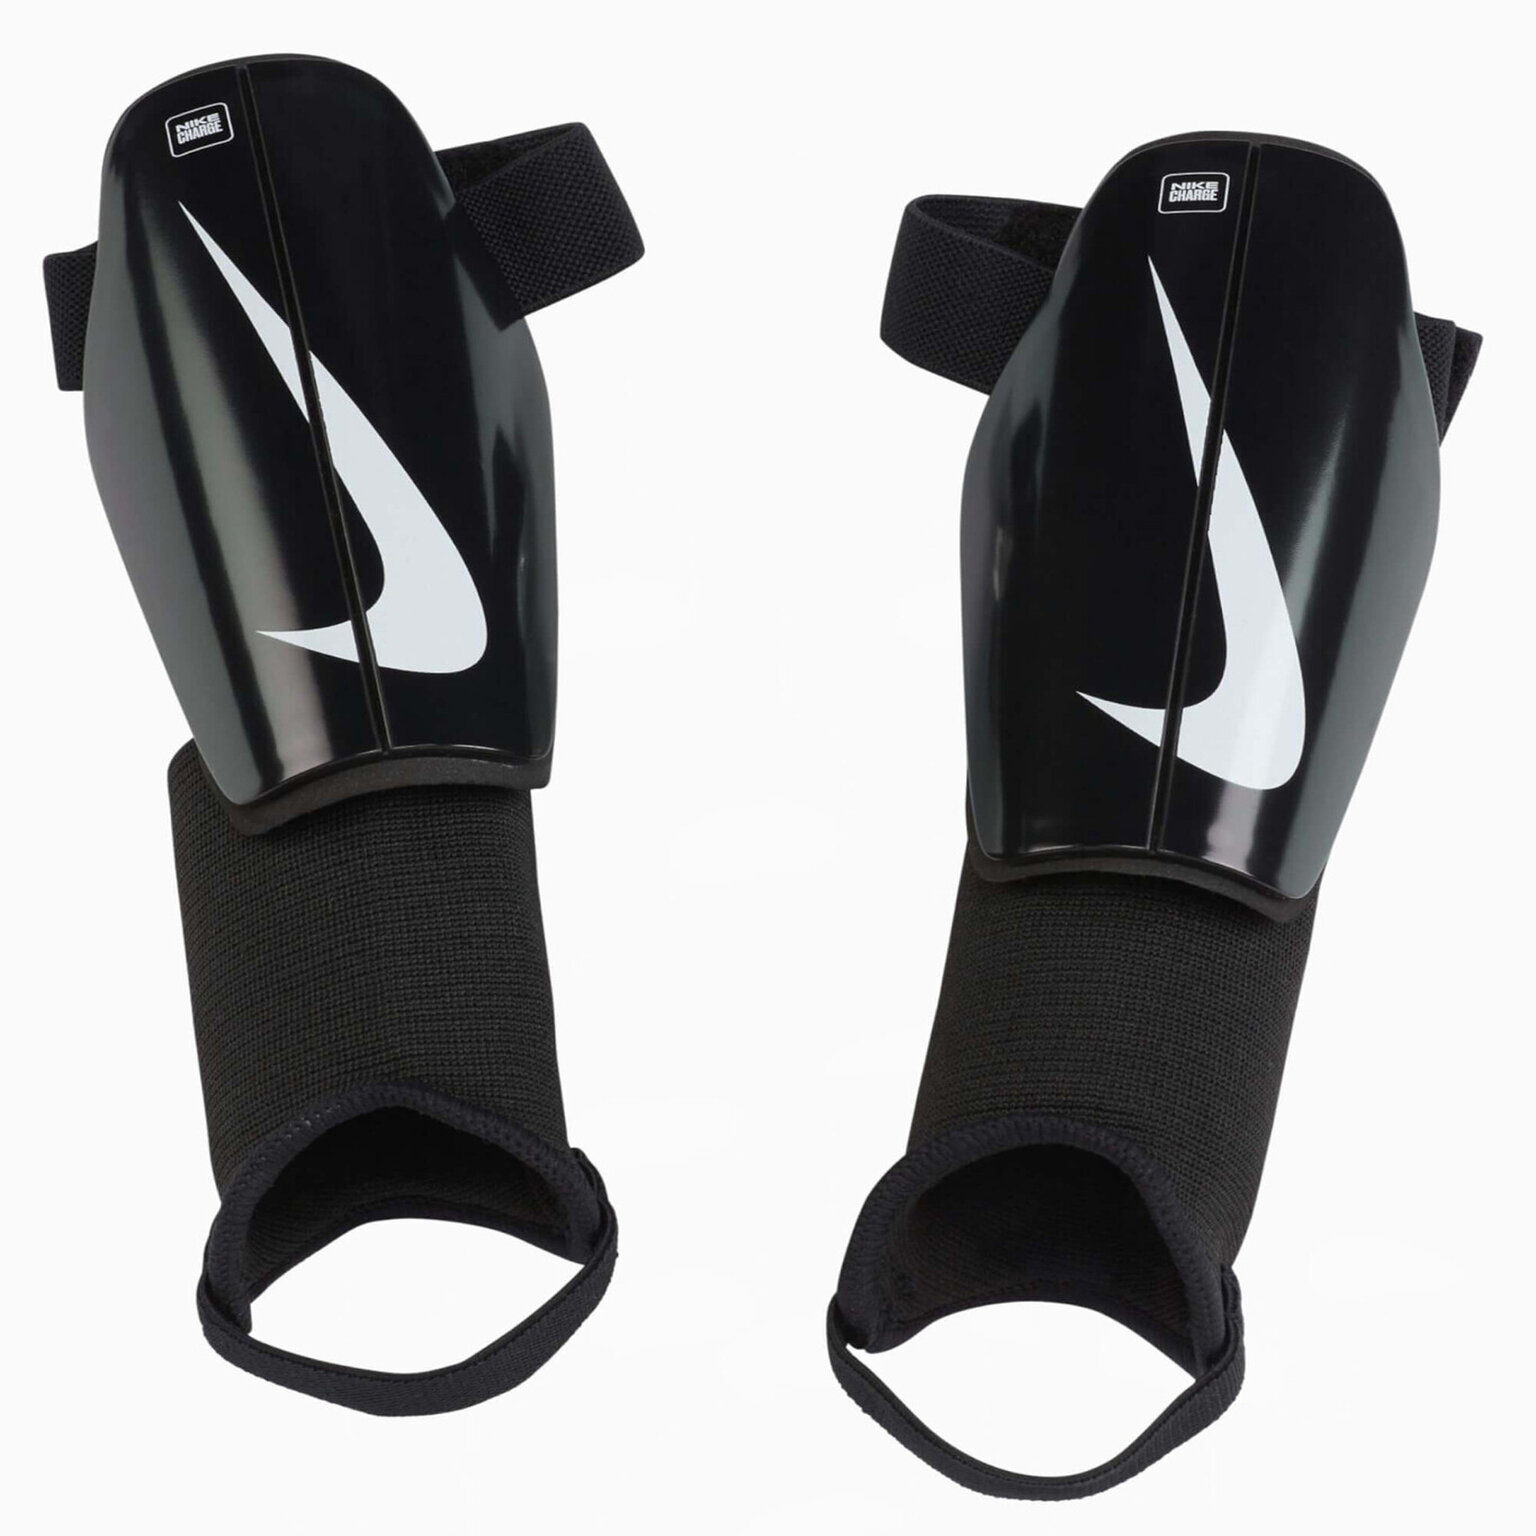 Щитки детские Nike Charge DX4610-010, размер L, Черный